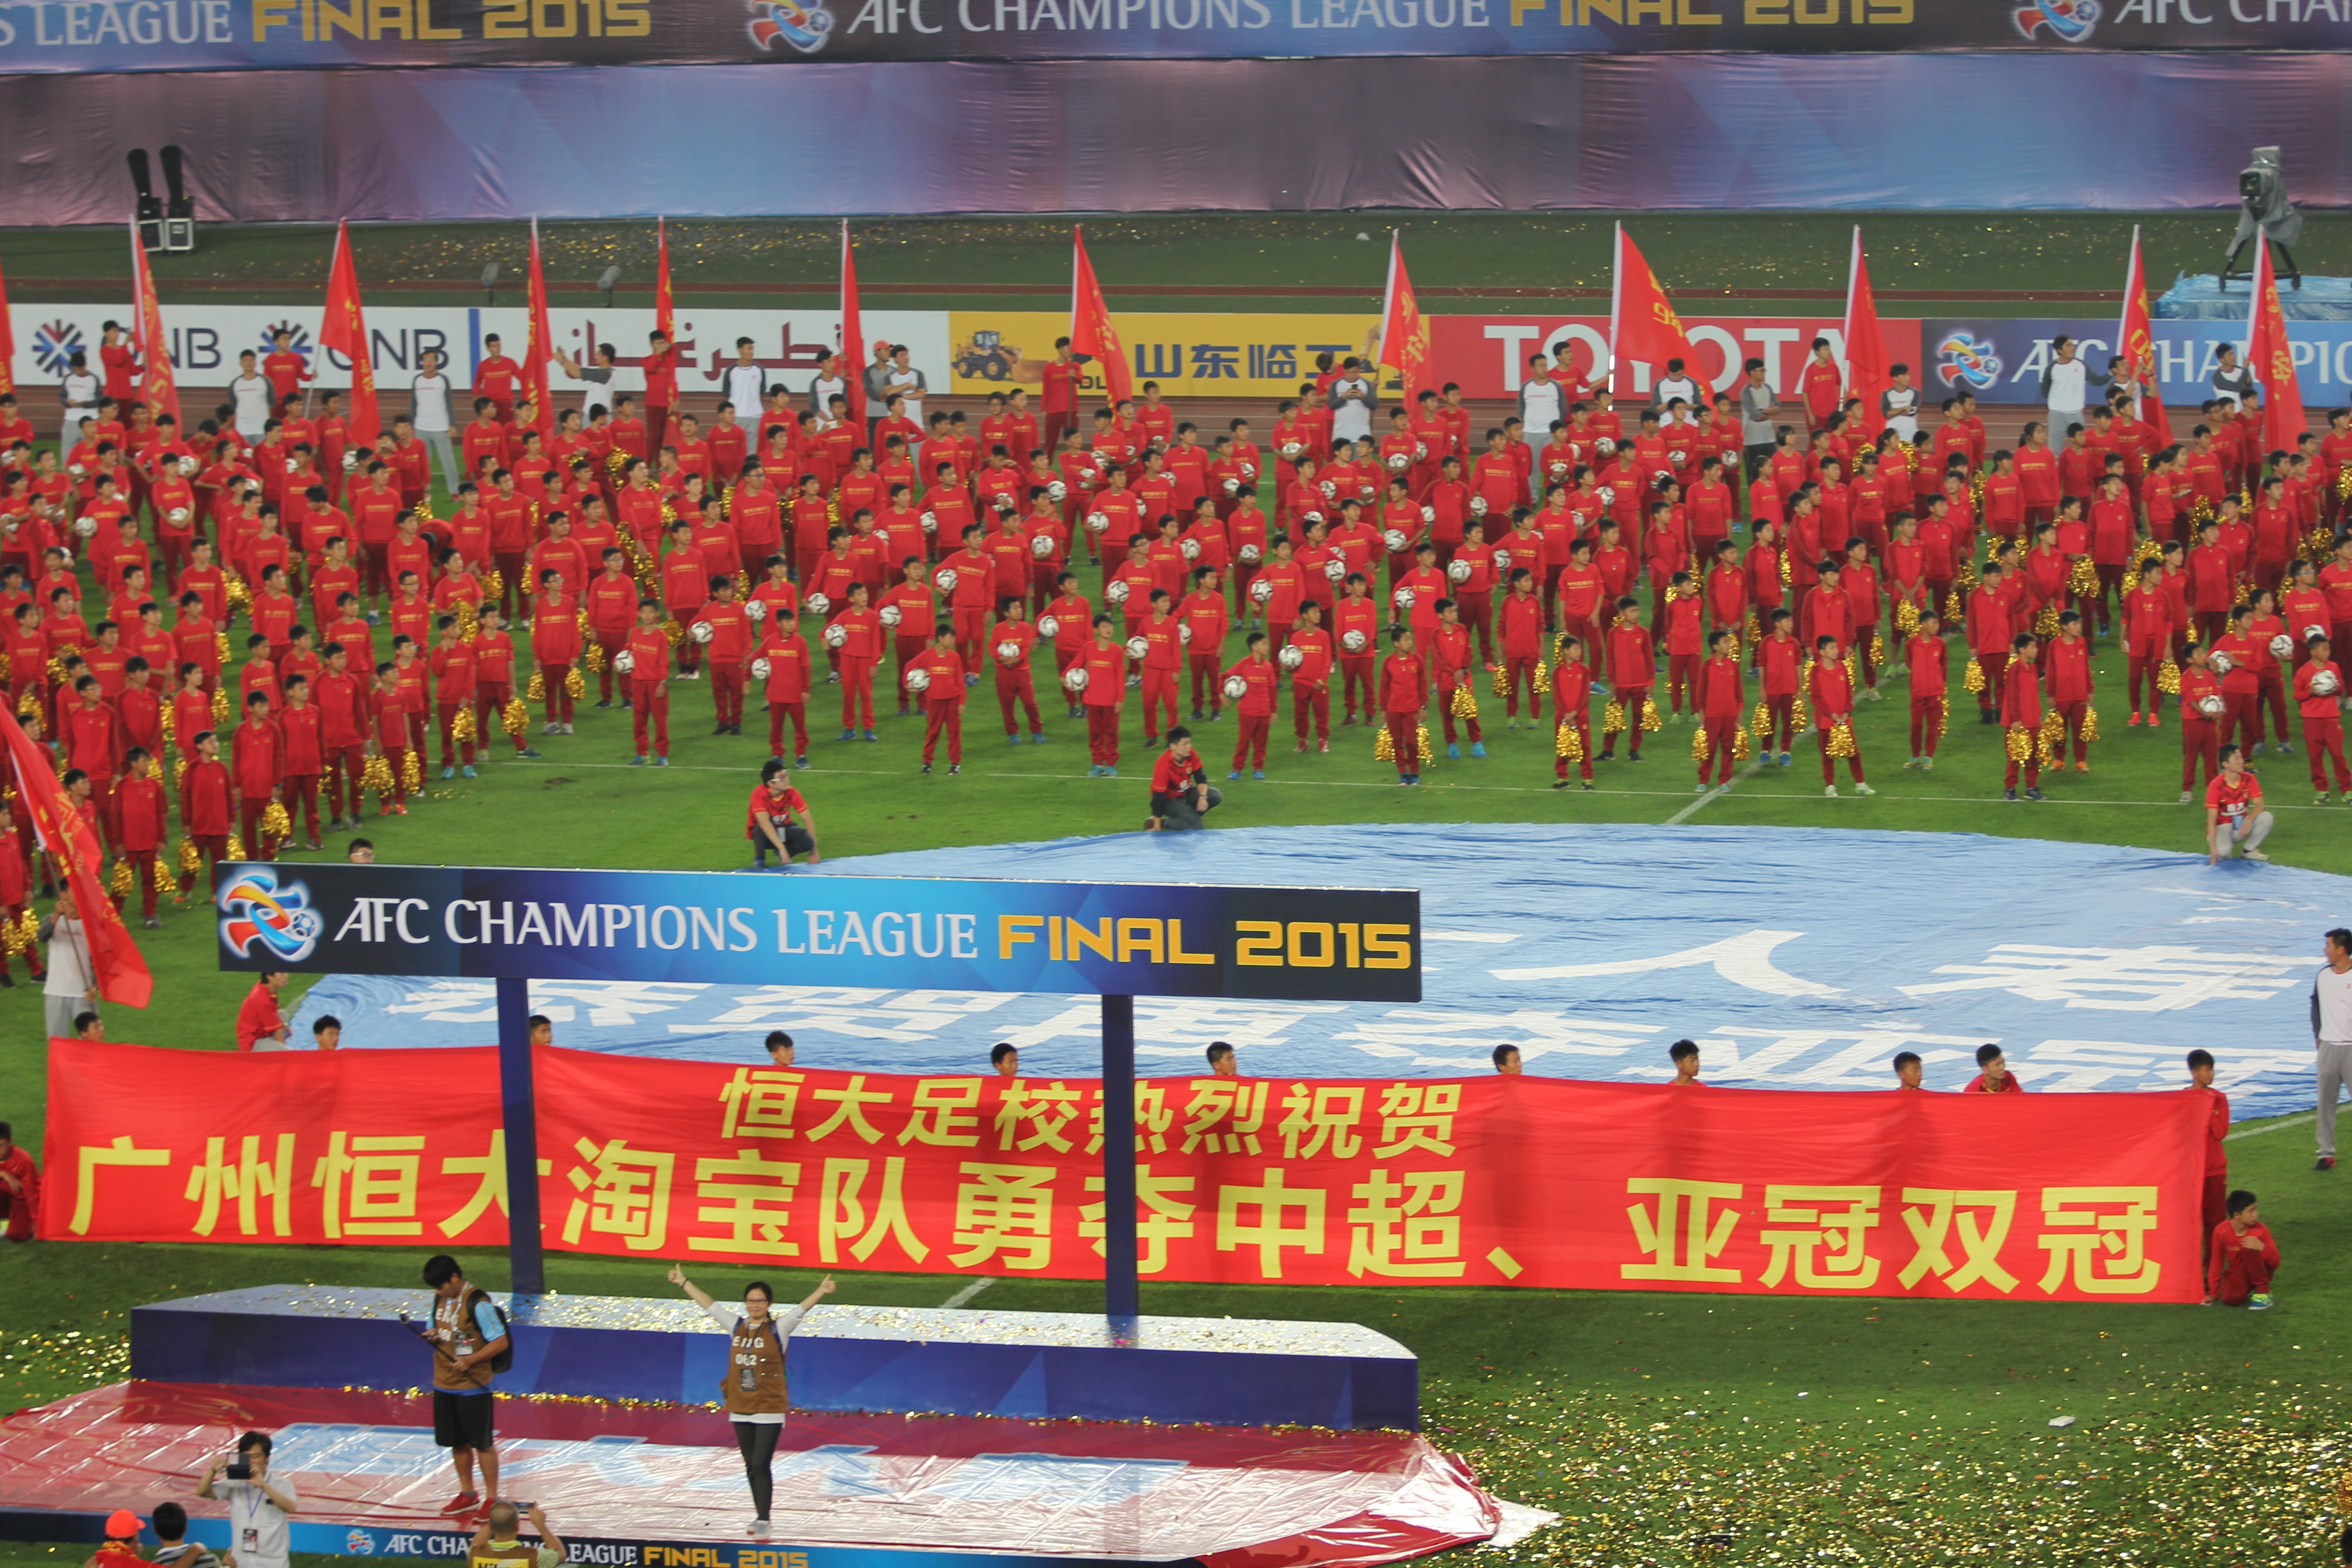 恒大足球学校中国足球新希望 2018年度招生工